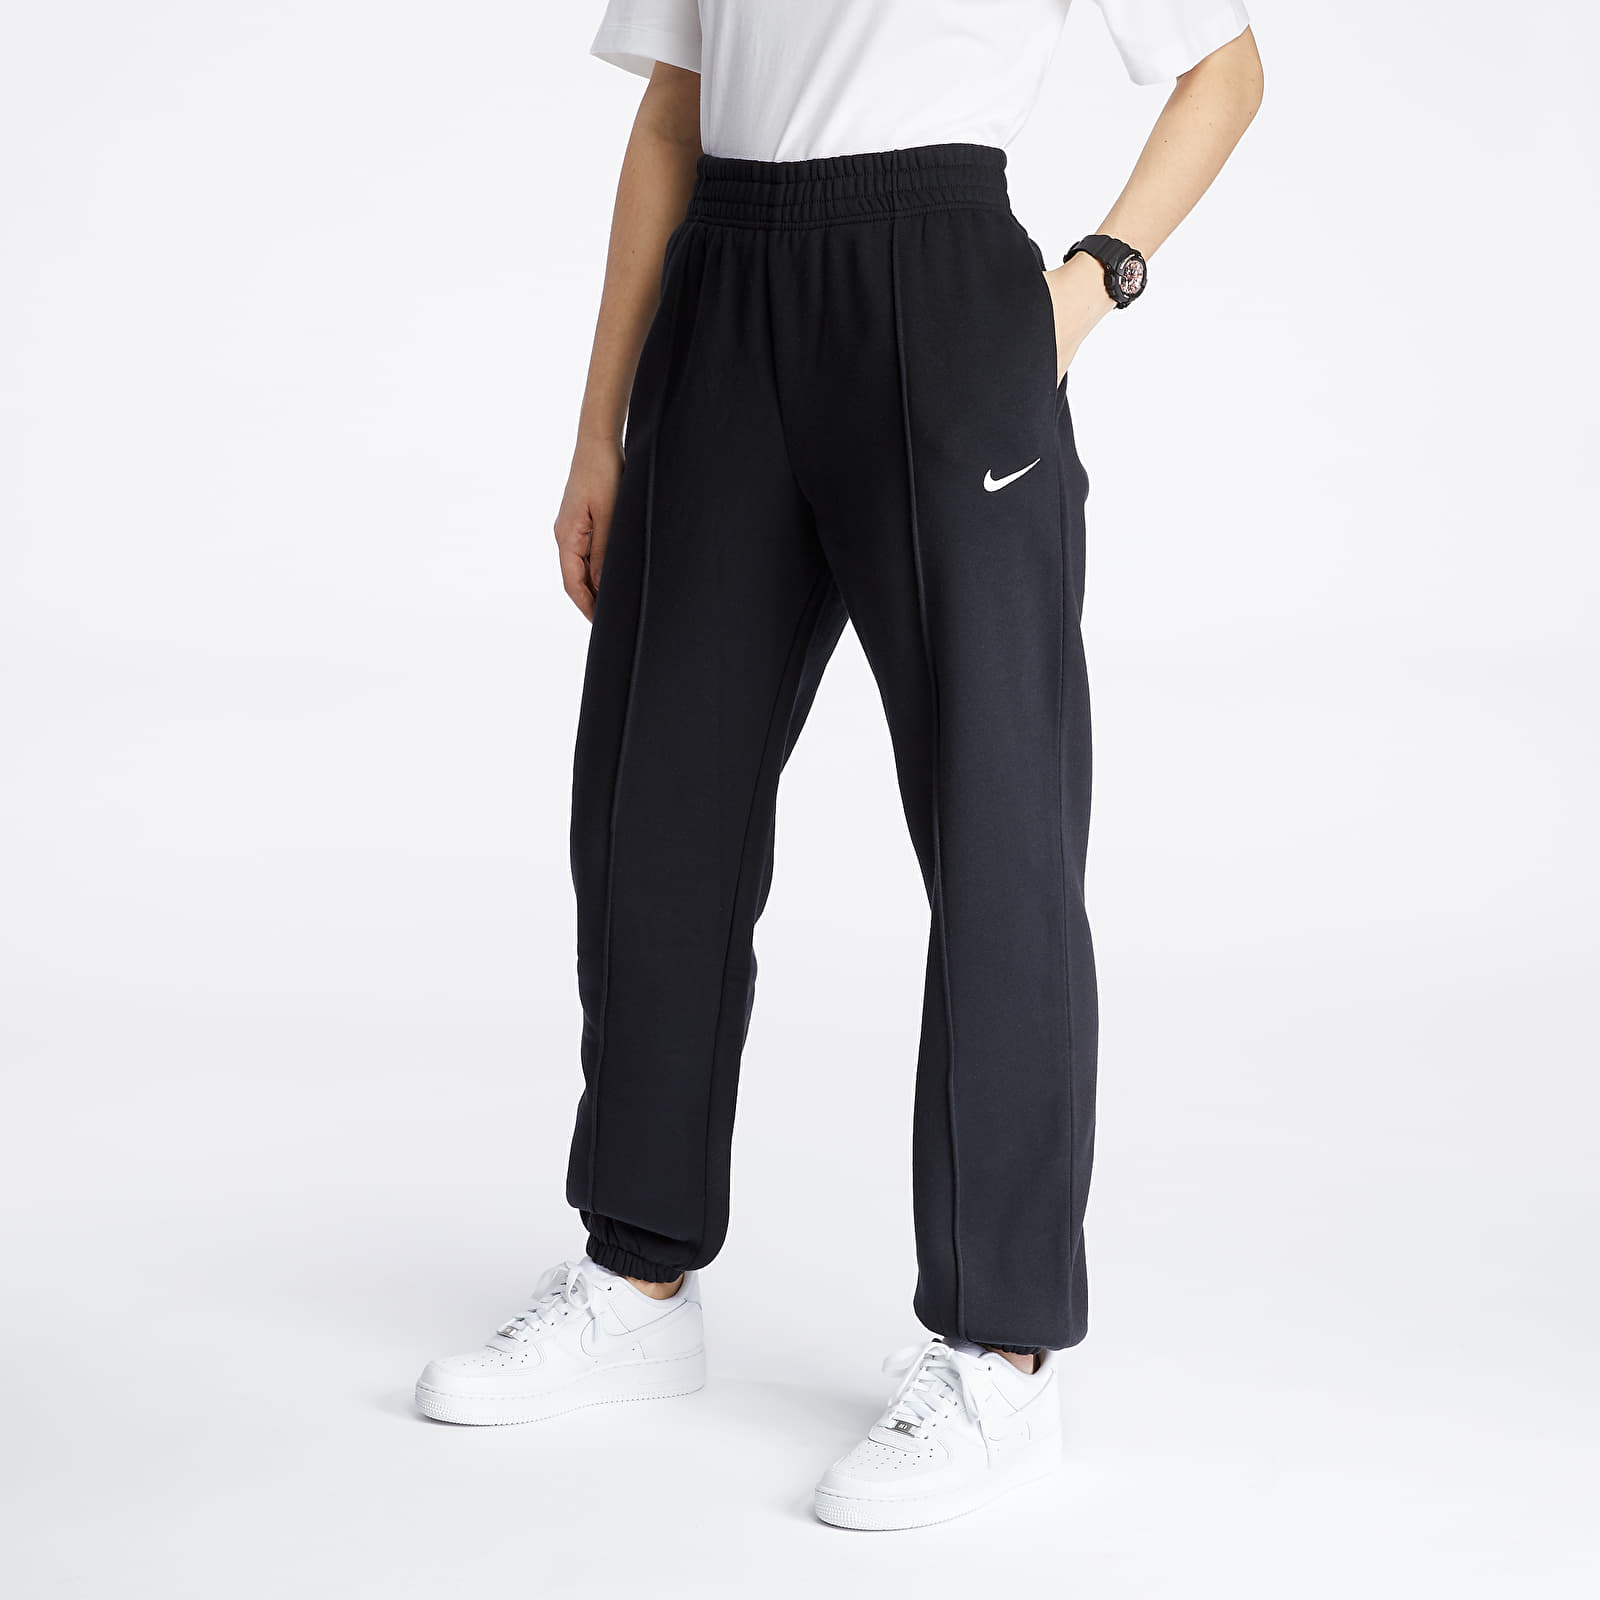 Pantaloni și blugi Nike Sportswear Women's Fleece Pants Black/ White